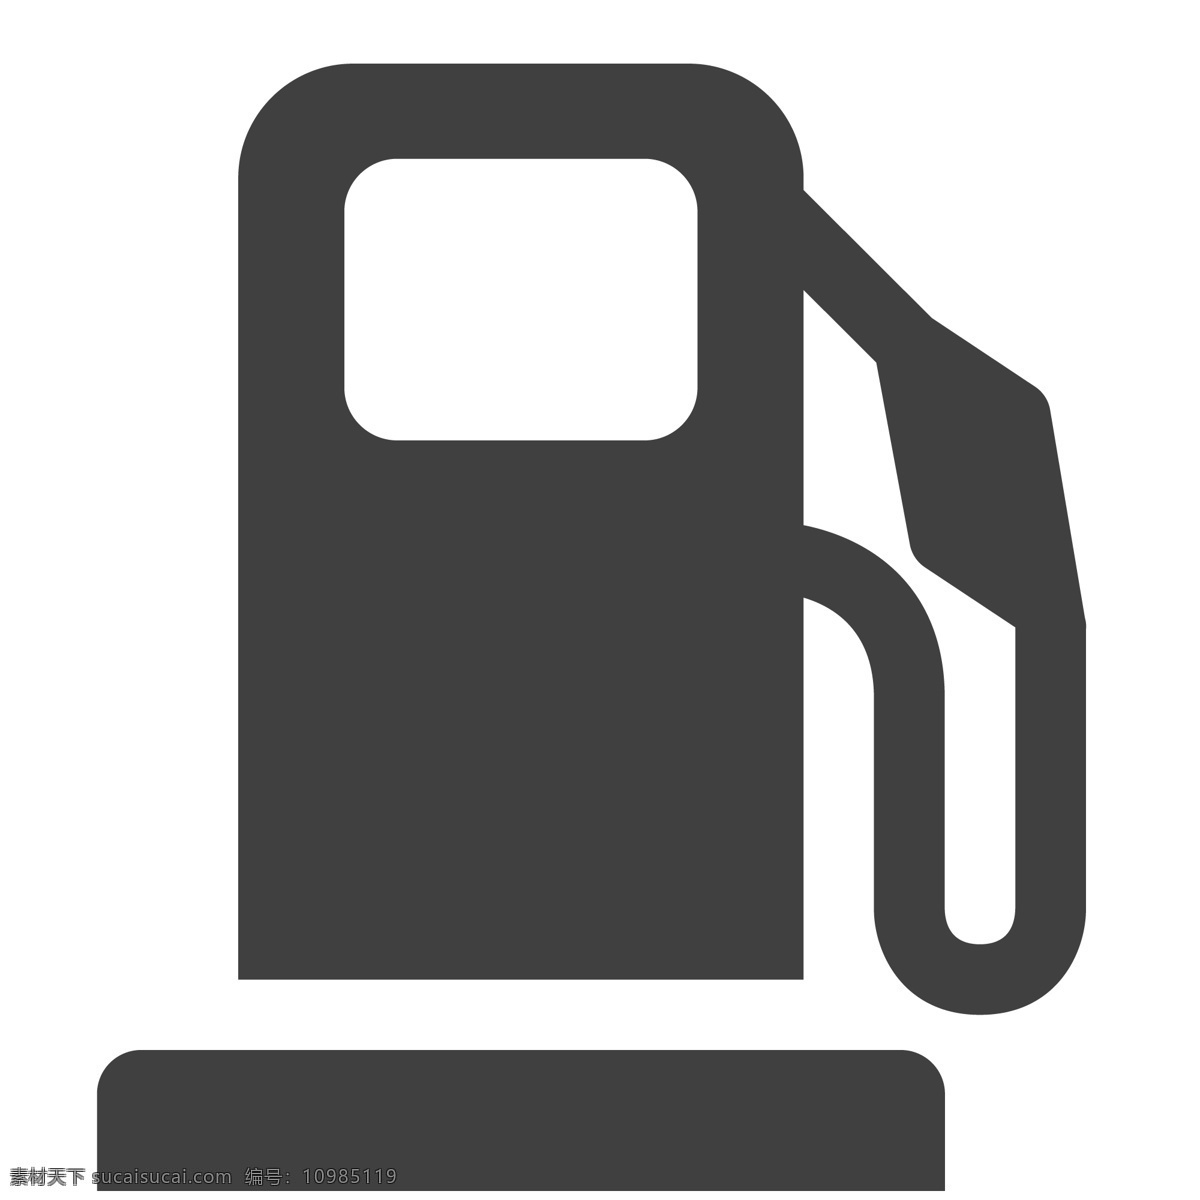 黑色的加油机 加油机 加油 卡通 生活图标 卡通图标 黑色的图标 手机图标 智能图标设计